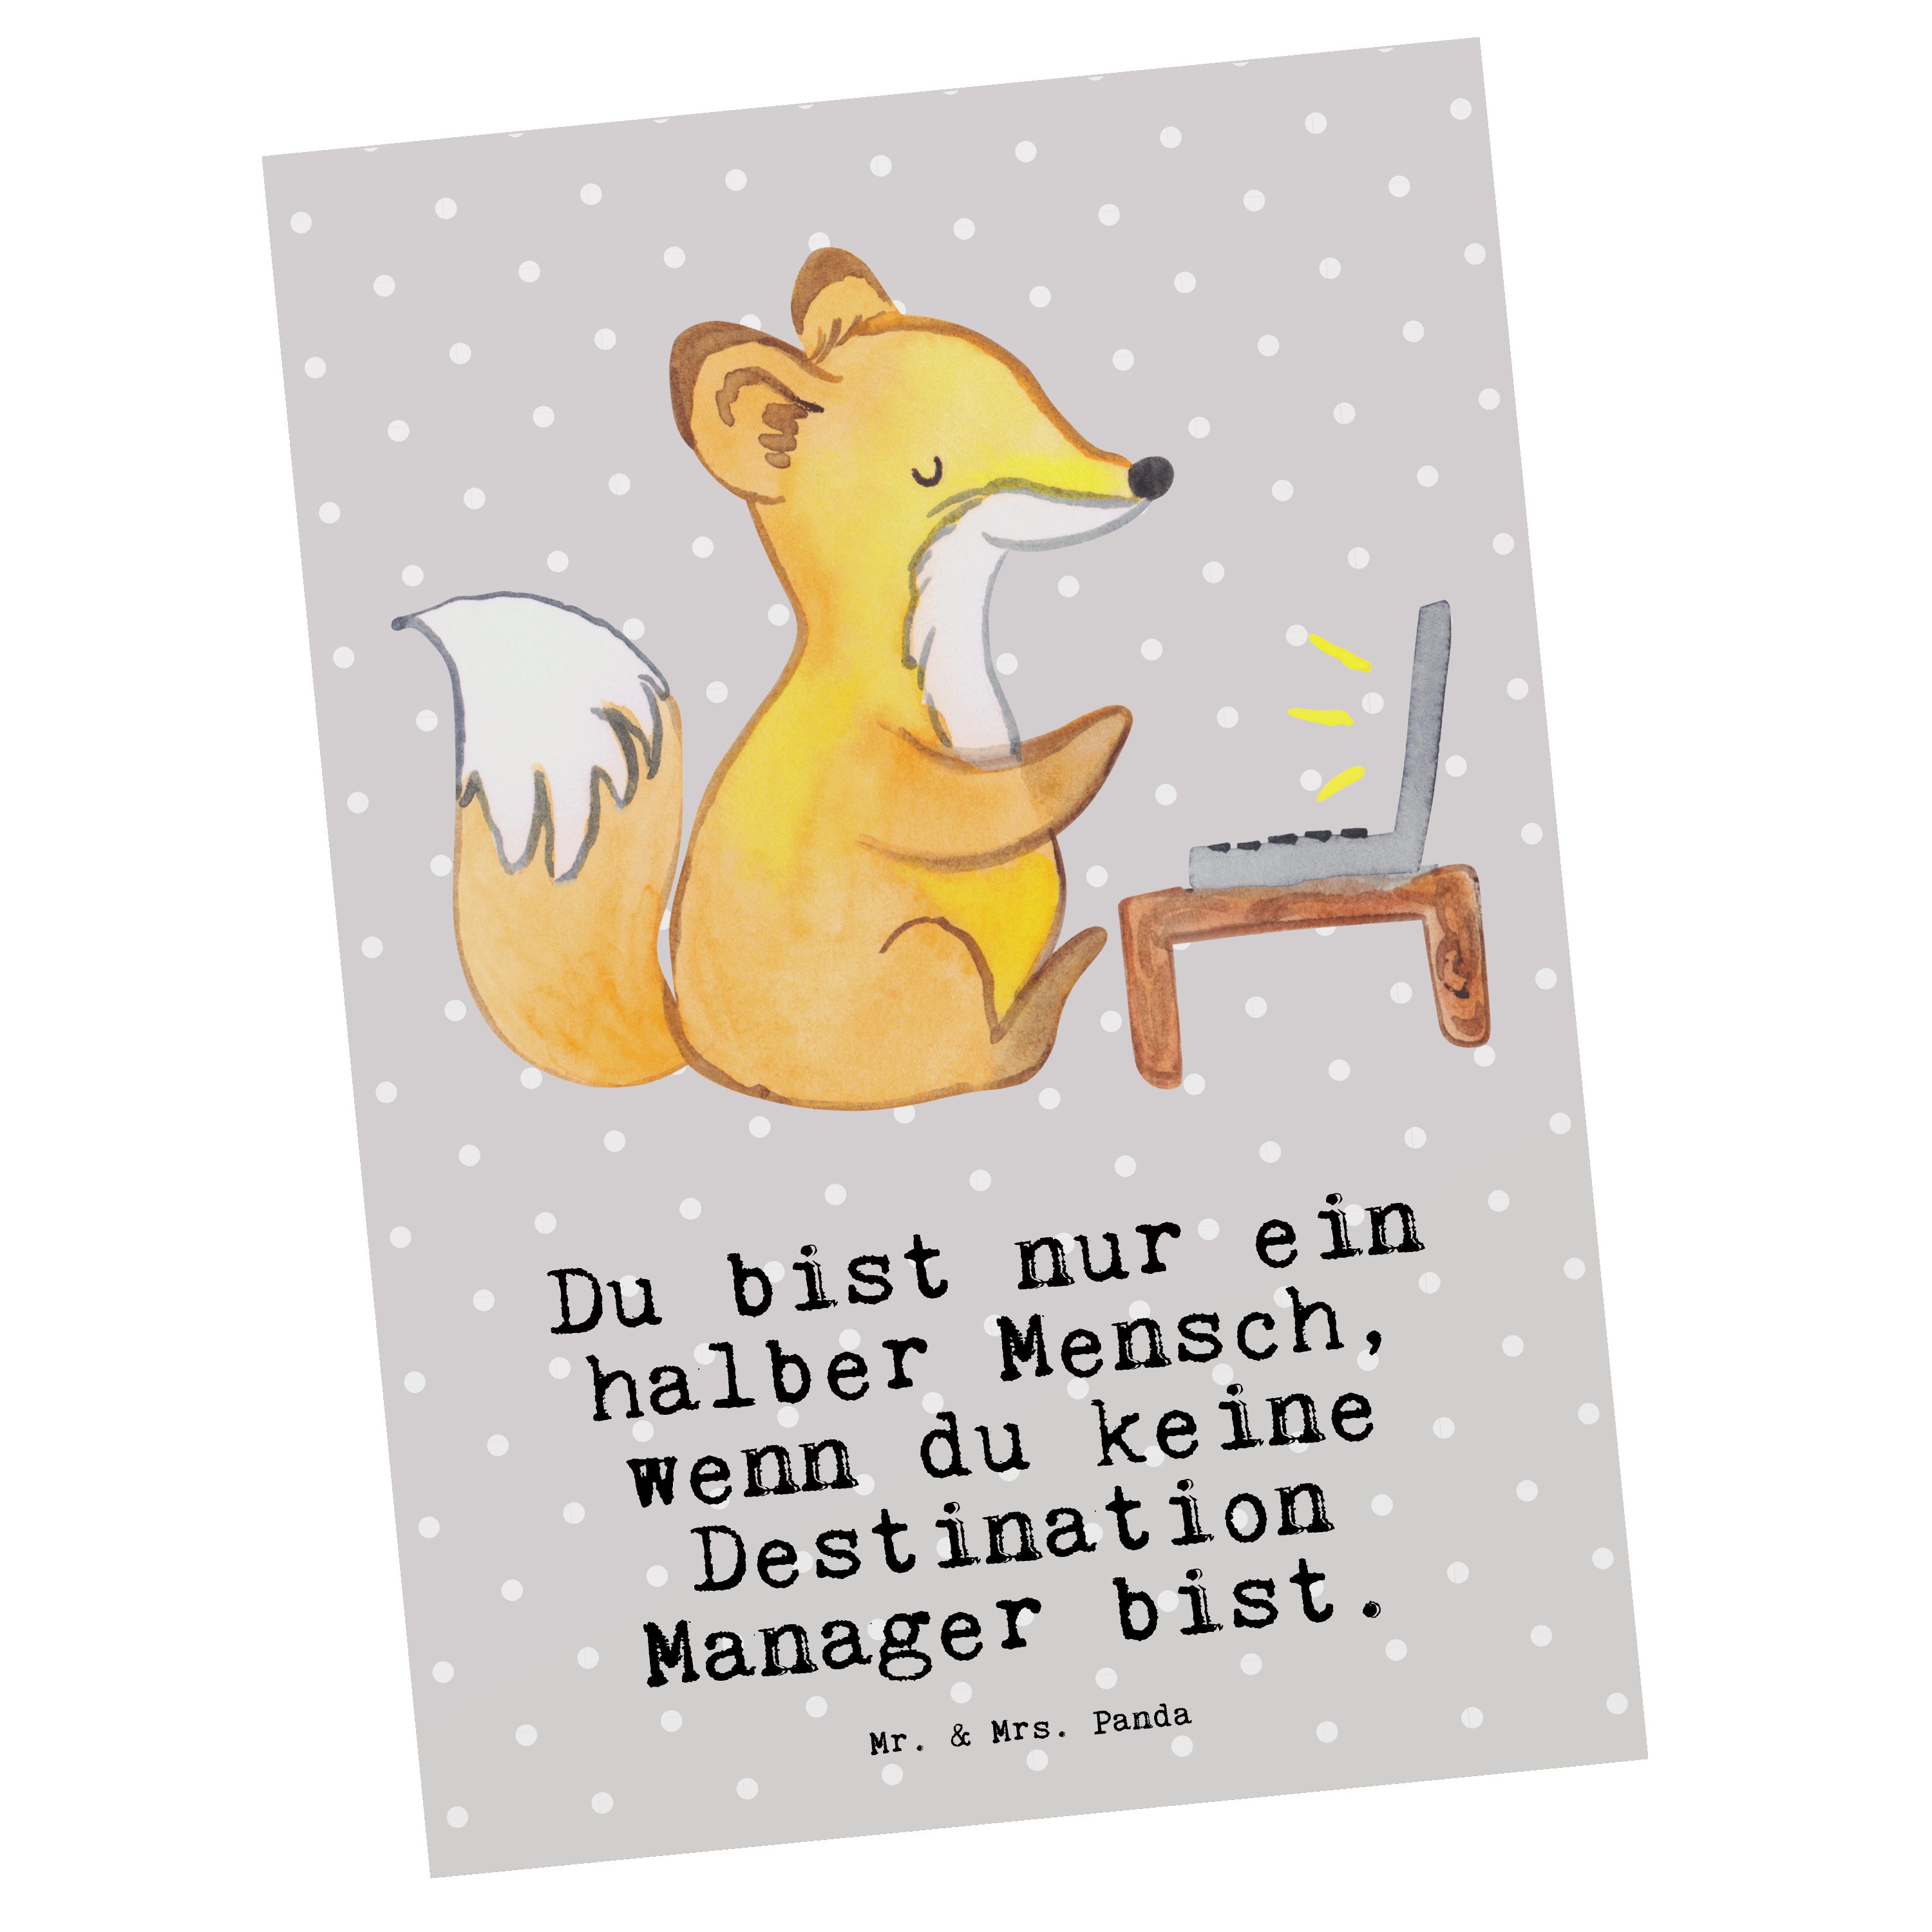 Mr. & Mrs. Panda Postkarte Destination Manager mit Herz - Grau Pastell - Geschenk, Grußkarte, Ab